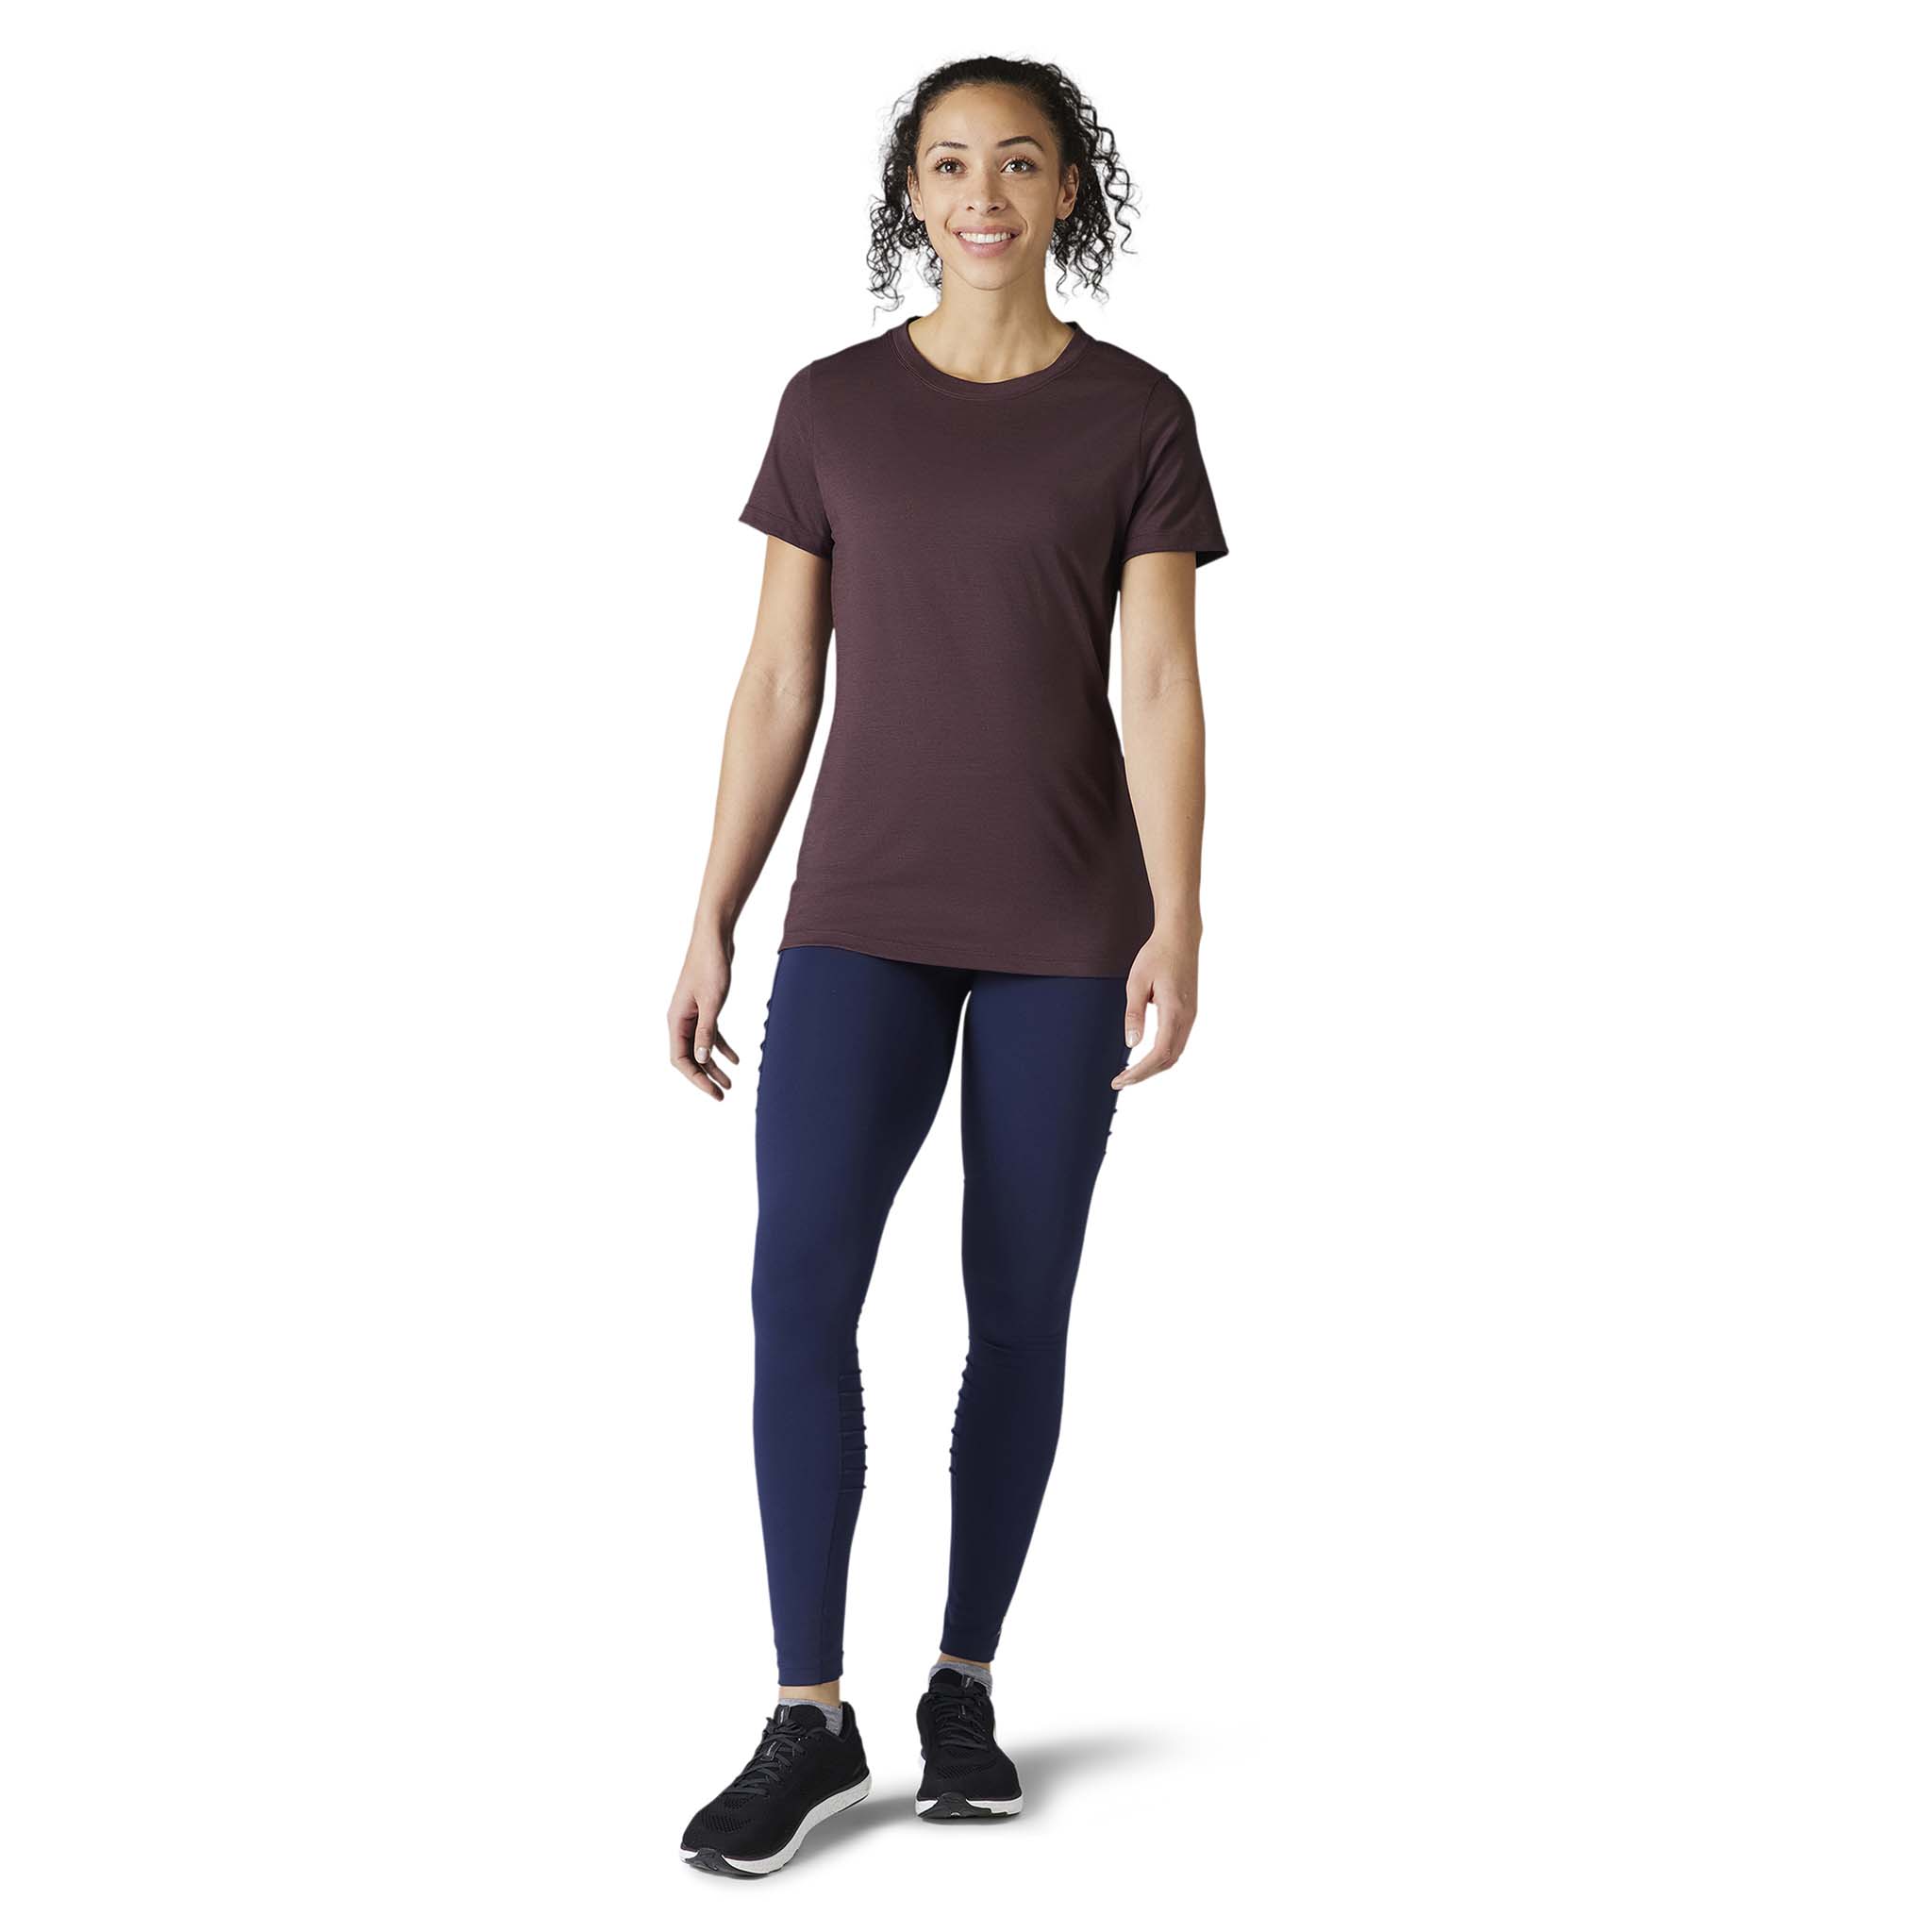 Smartwool Women's Merino Sport 150 Short Sleeve T-Shirt - Soccer Sport  Fitness